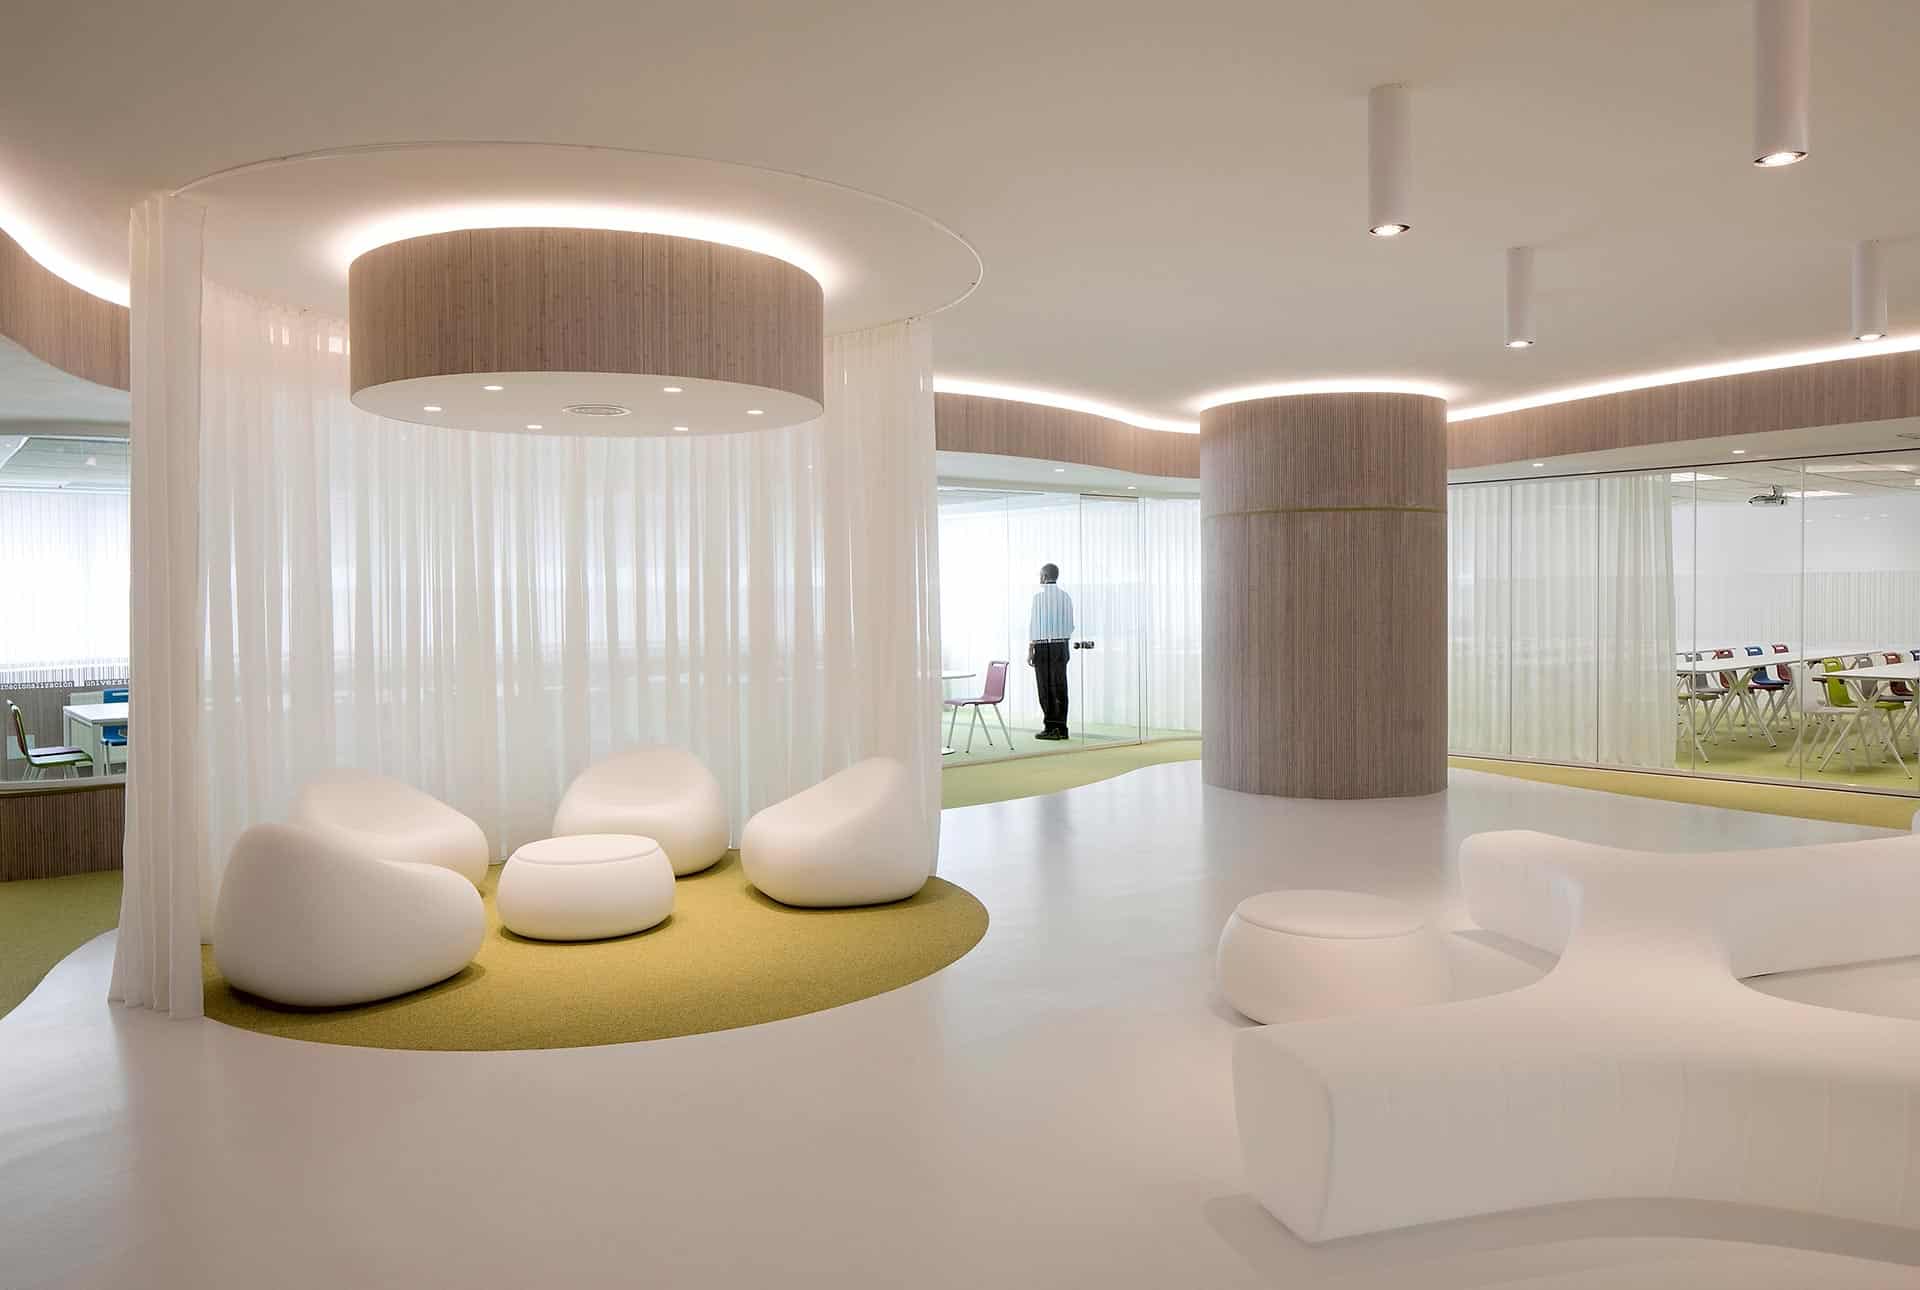 Vestíbulo con suelo blanco y cortinas translucidas en oficinas modernas del CISE diseñadas por Moah Arquitectos en Santander